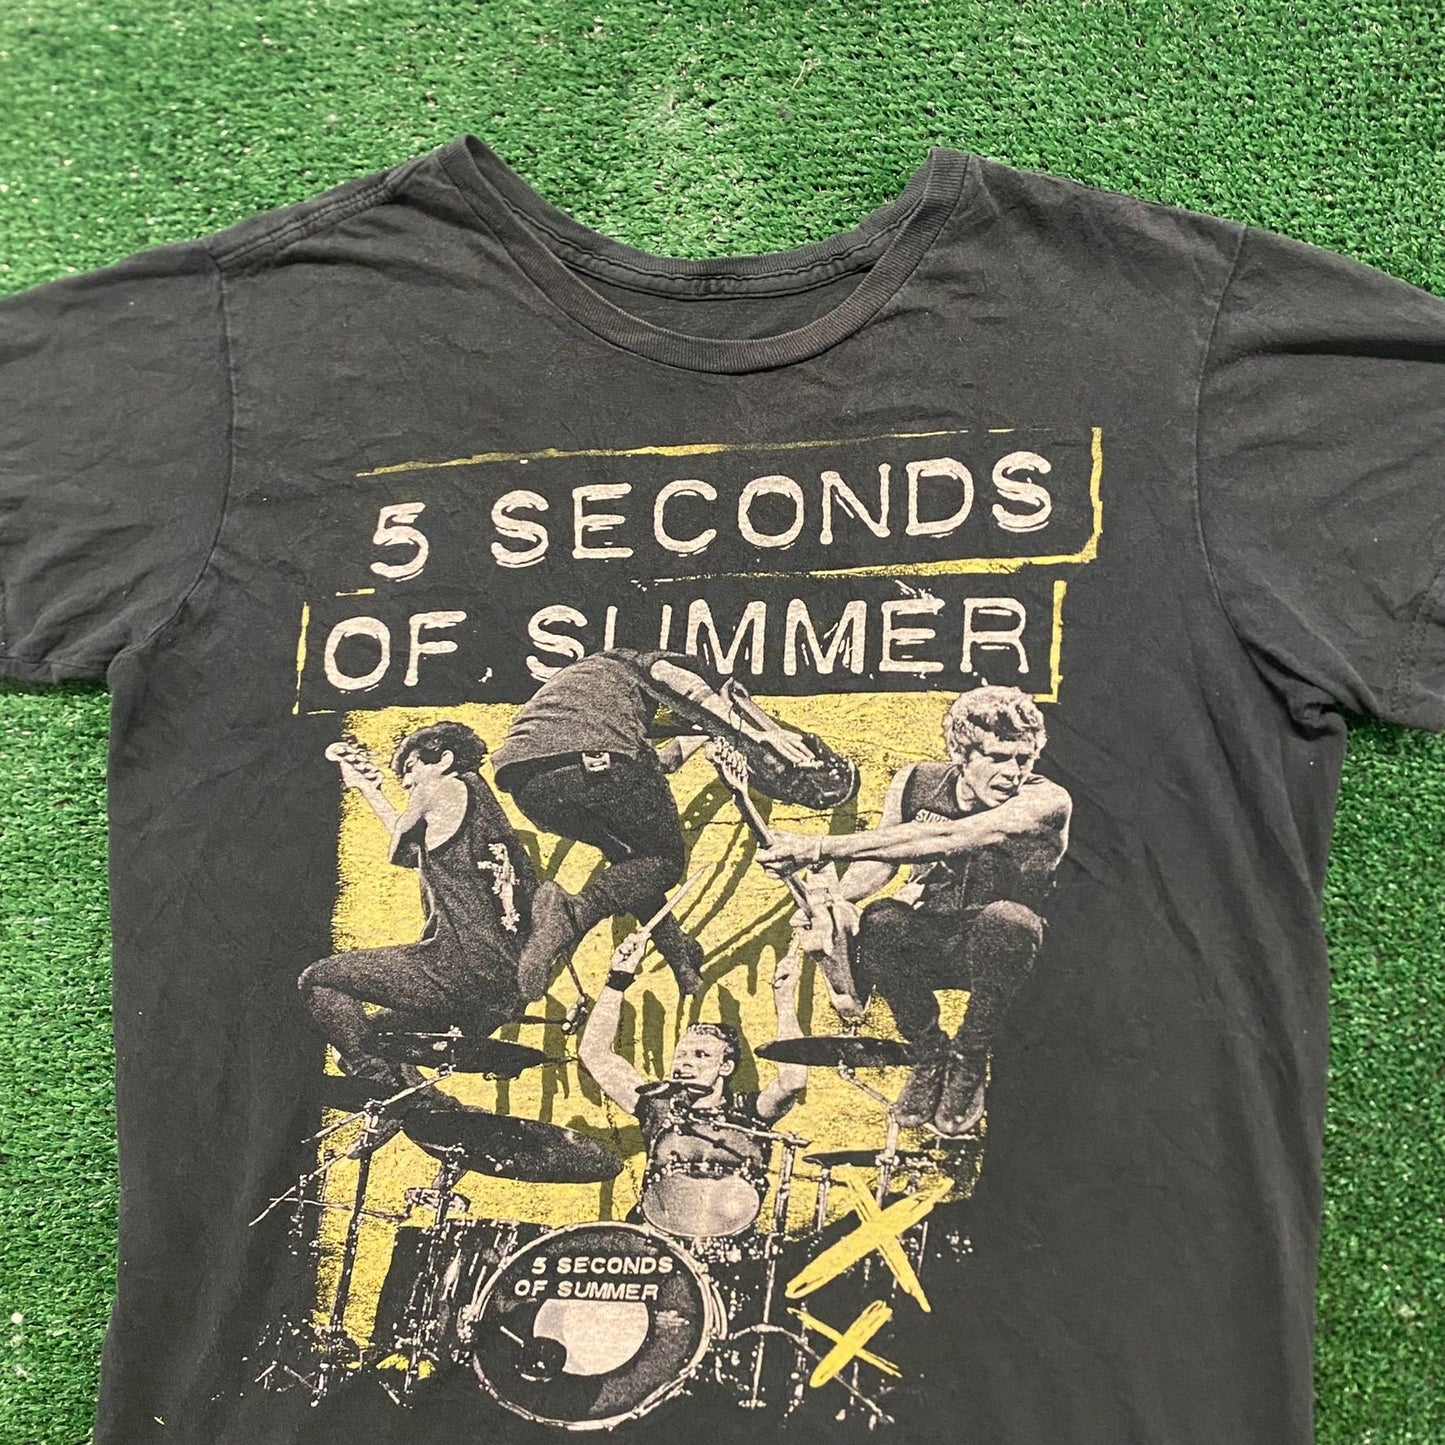 5 Seconds of Summer Rock Band T-Shirt